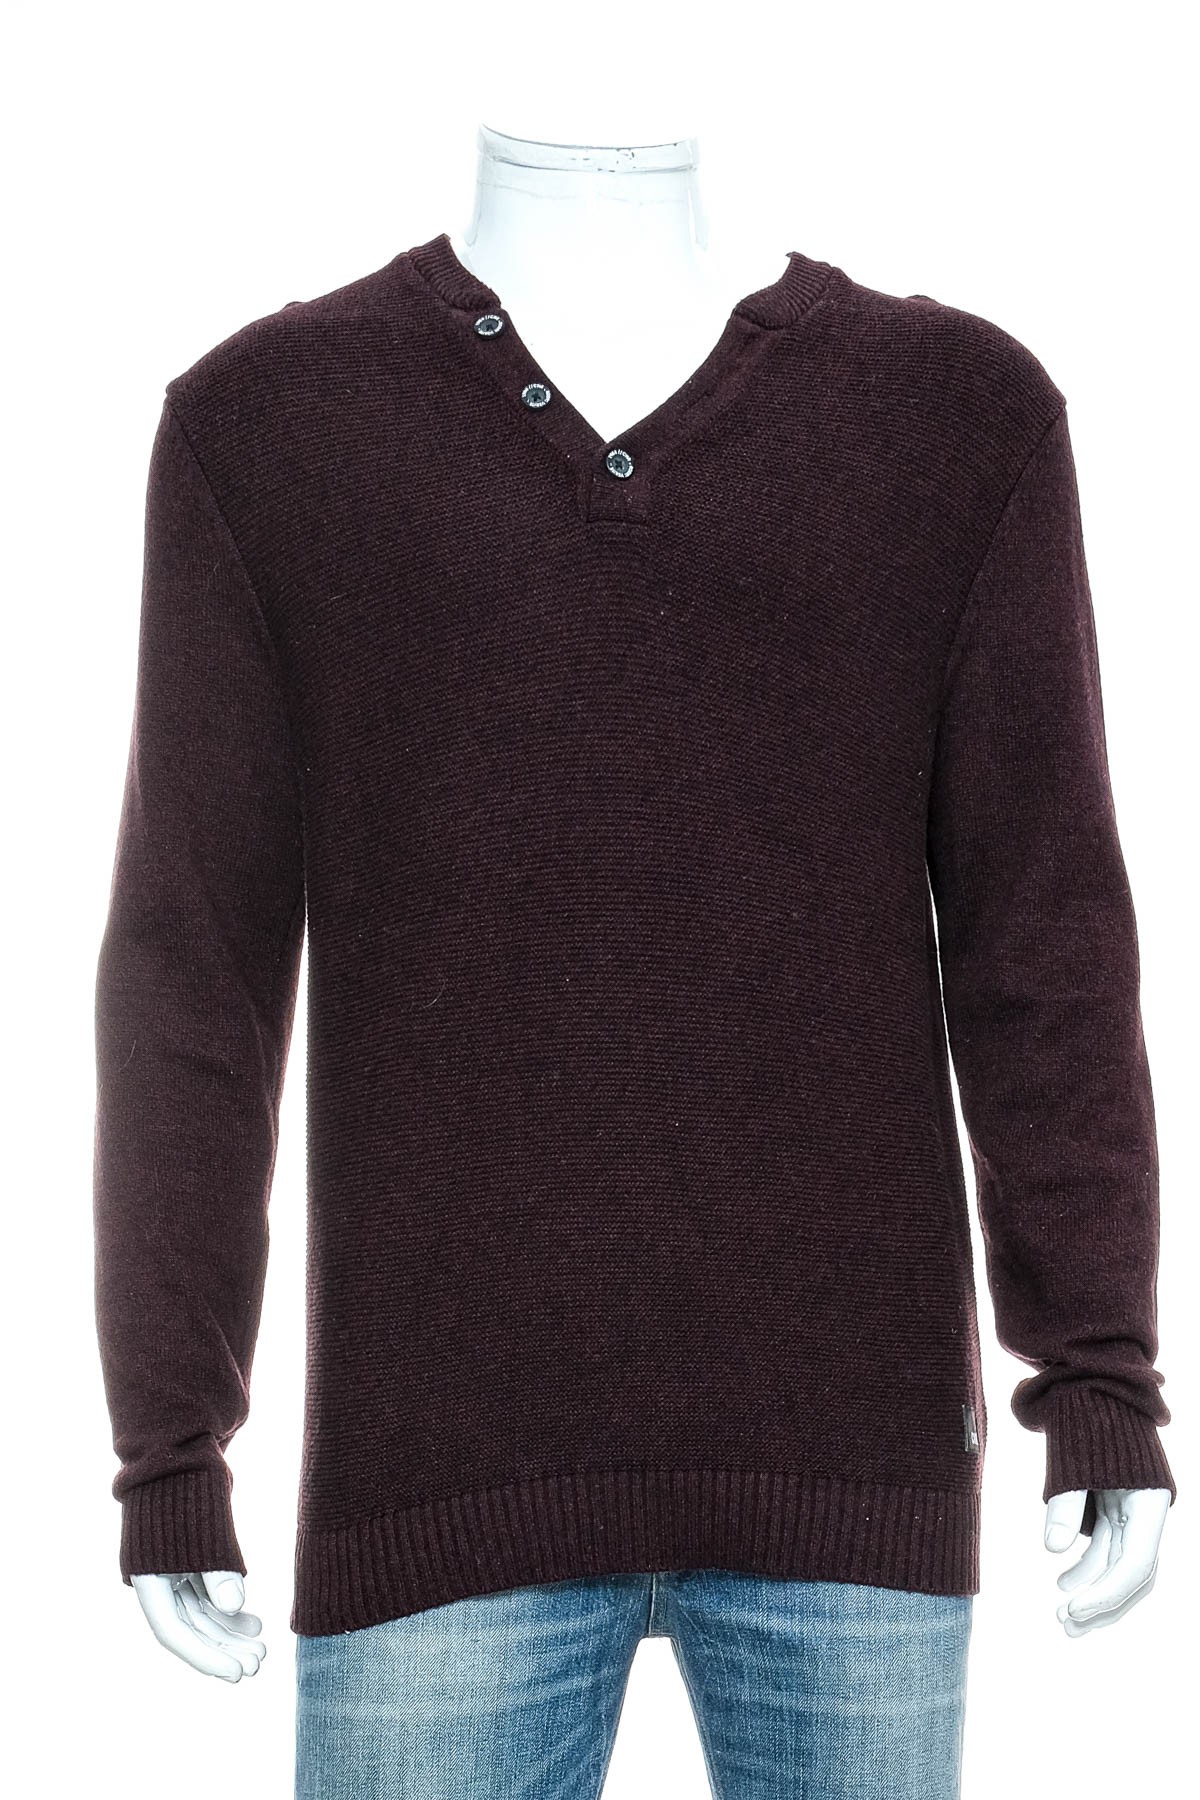 Men's sweater - CONNOR - 0